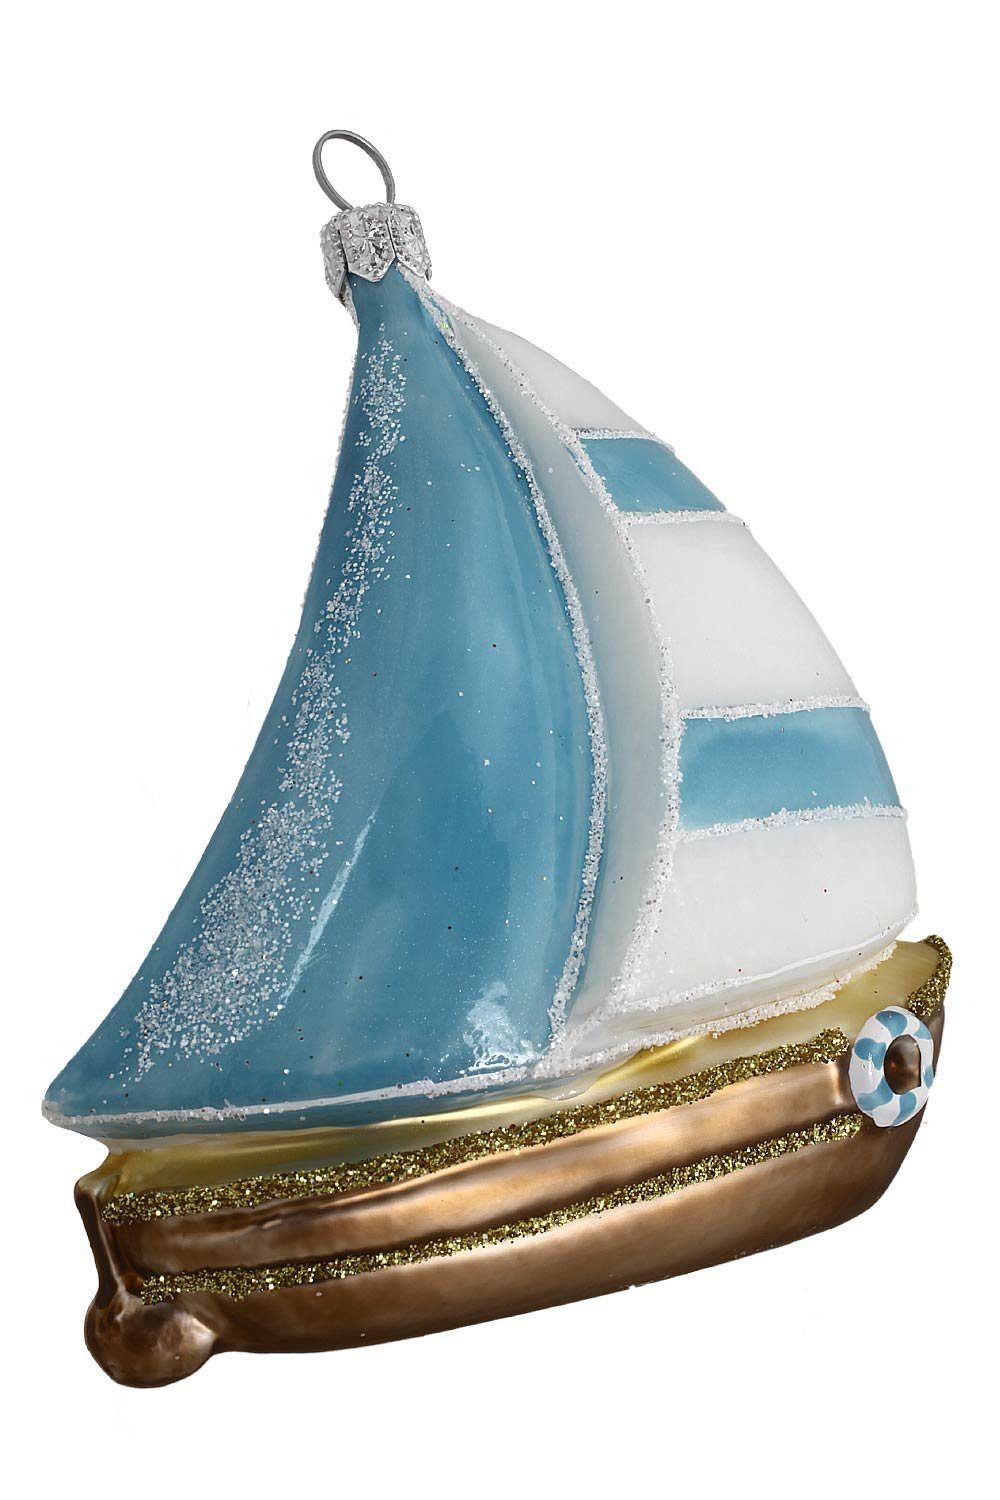 Hamburger Weihnachtskontor Segelschiff - mundgeblasen handdekoriert blau-weiß, Christbaumschmuck - Dekohänger